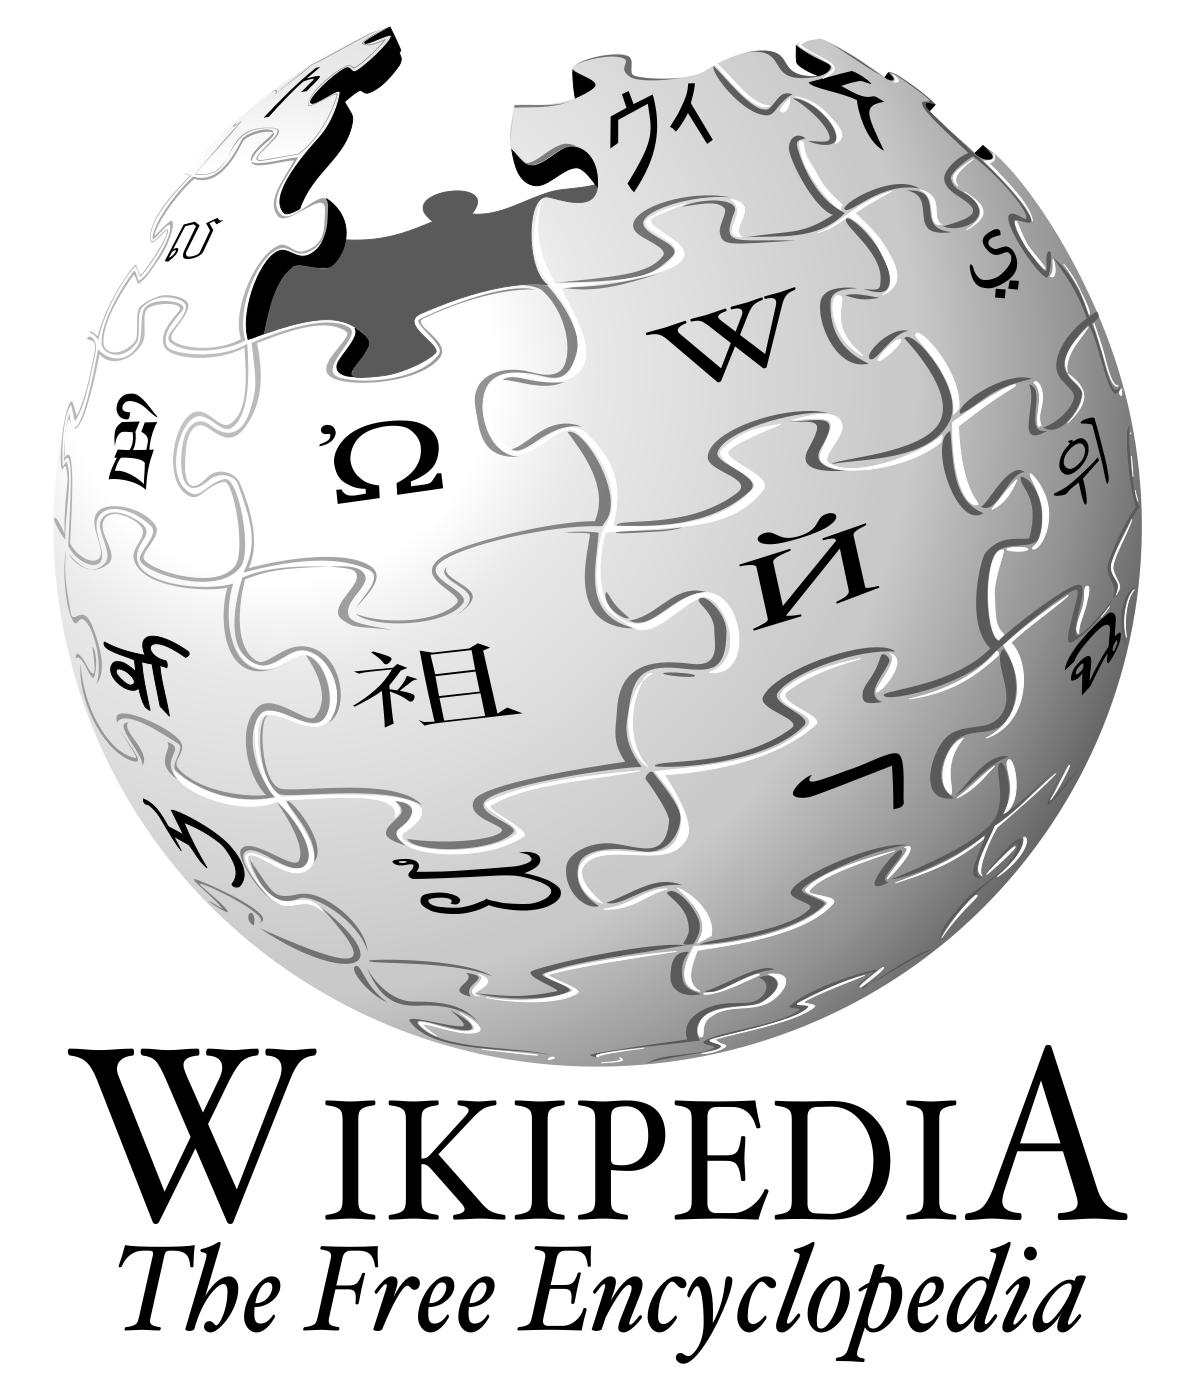 Https ru wikipedia org wiki википедия. Википедия картинки. Википедия логотип. Значок Википедии. Ремипедия.